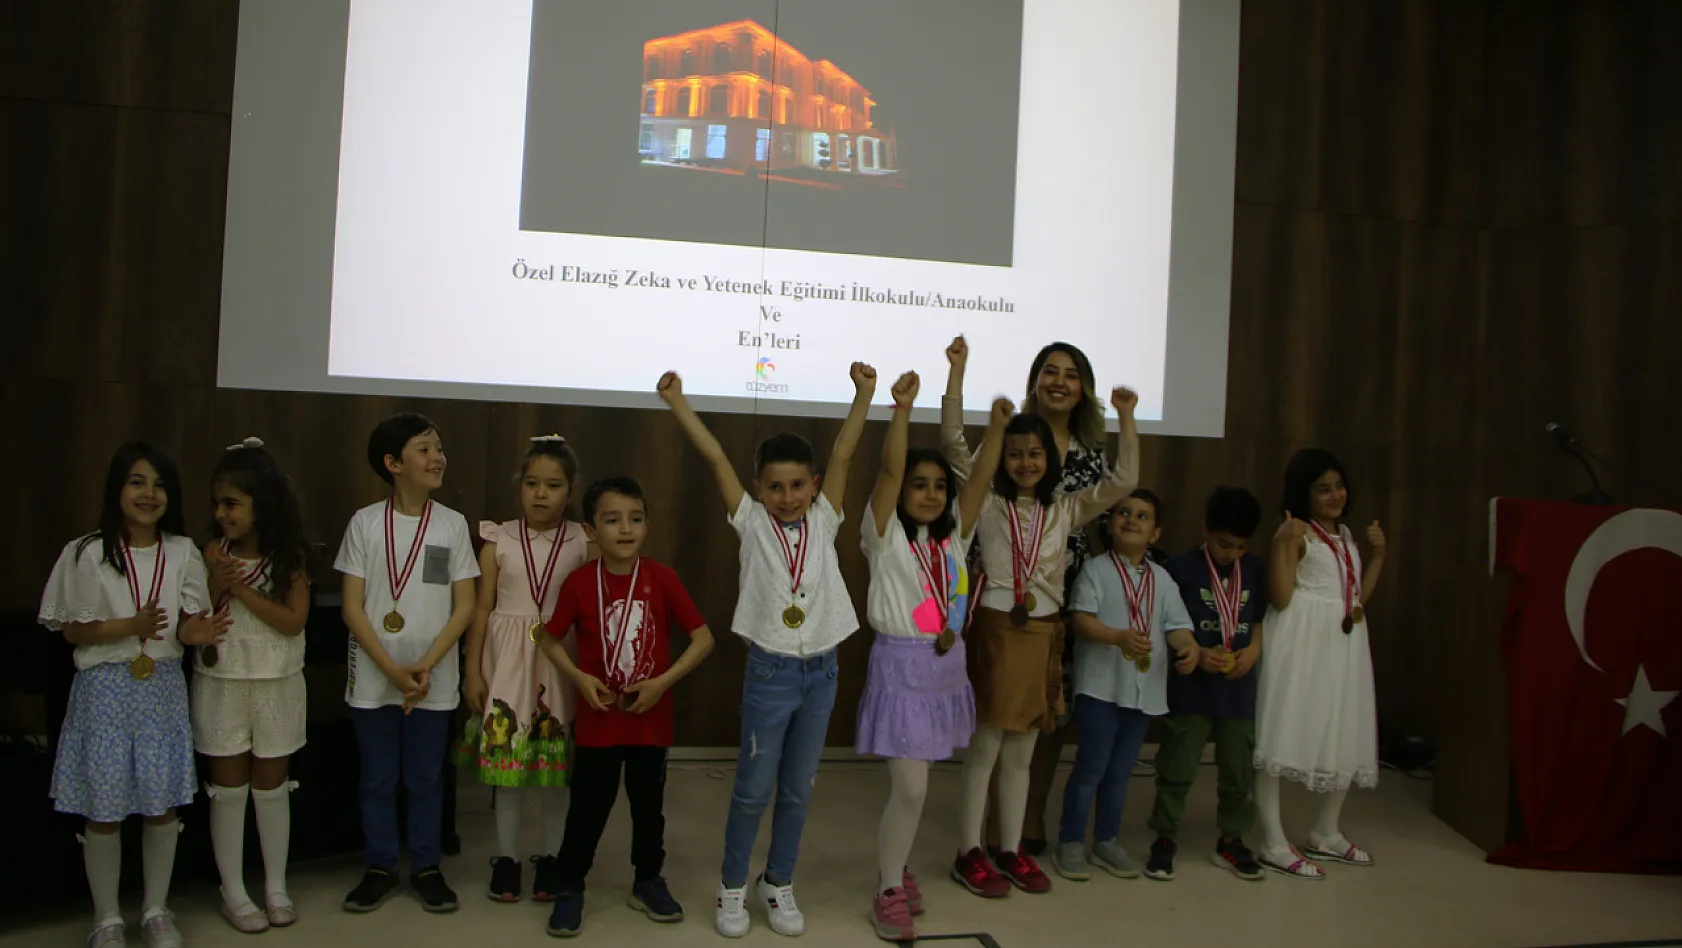 Elazığ'da Zeka ve Yetenek Okulu öğrencileri başarılarıyla ödüllendirildi